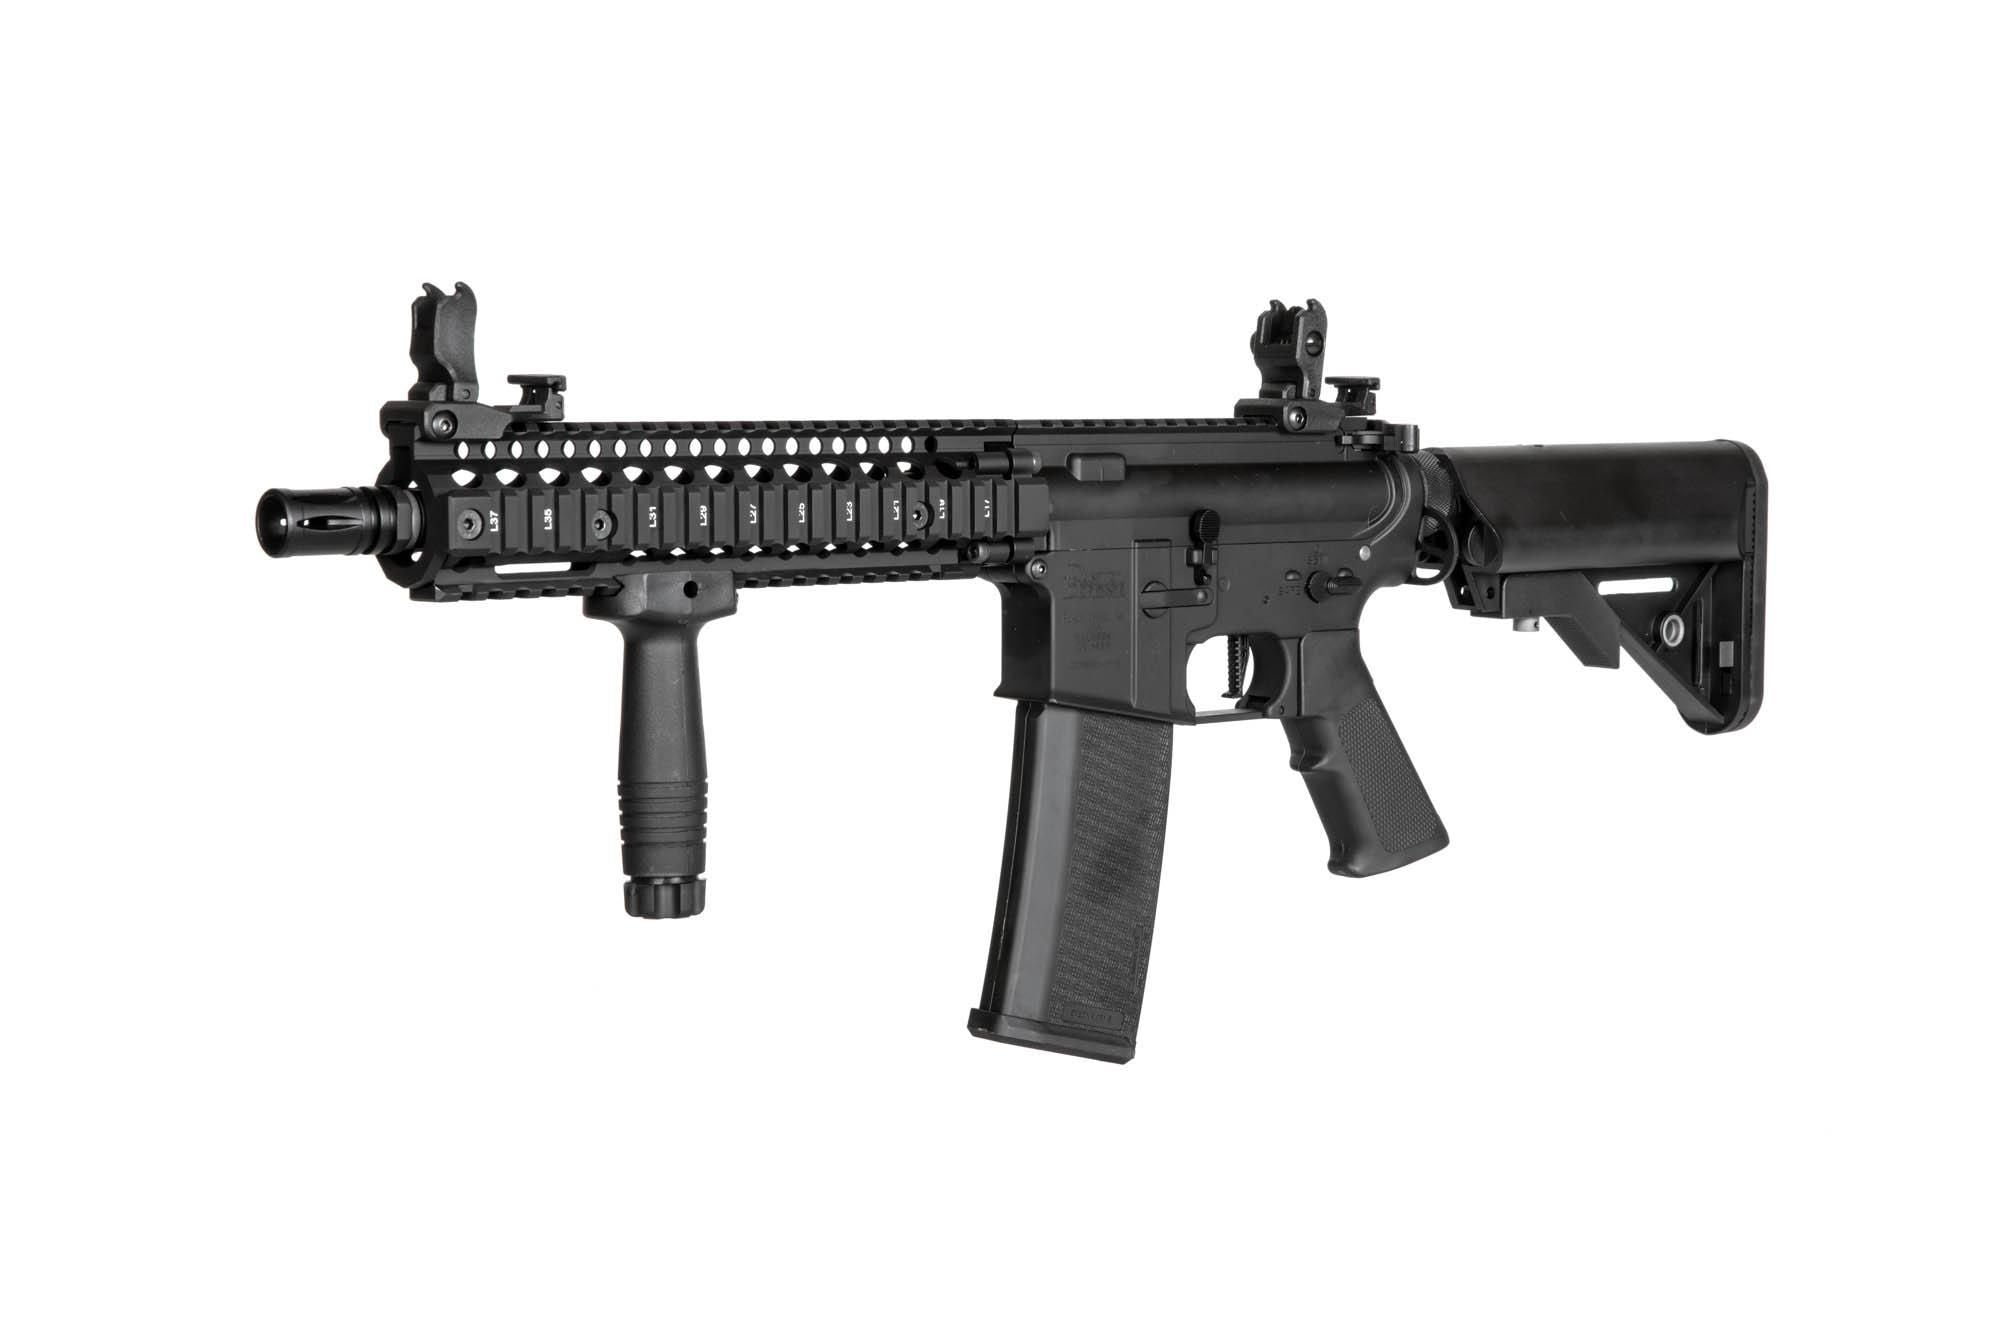 Daniel Defense® MK18 SA-E19 EDGE 2.0™ Carbine Replica - Black